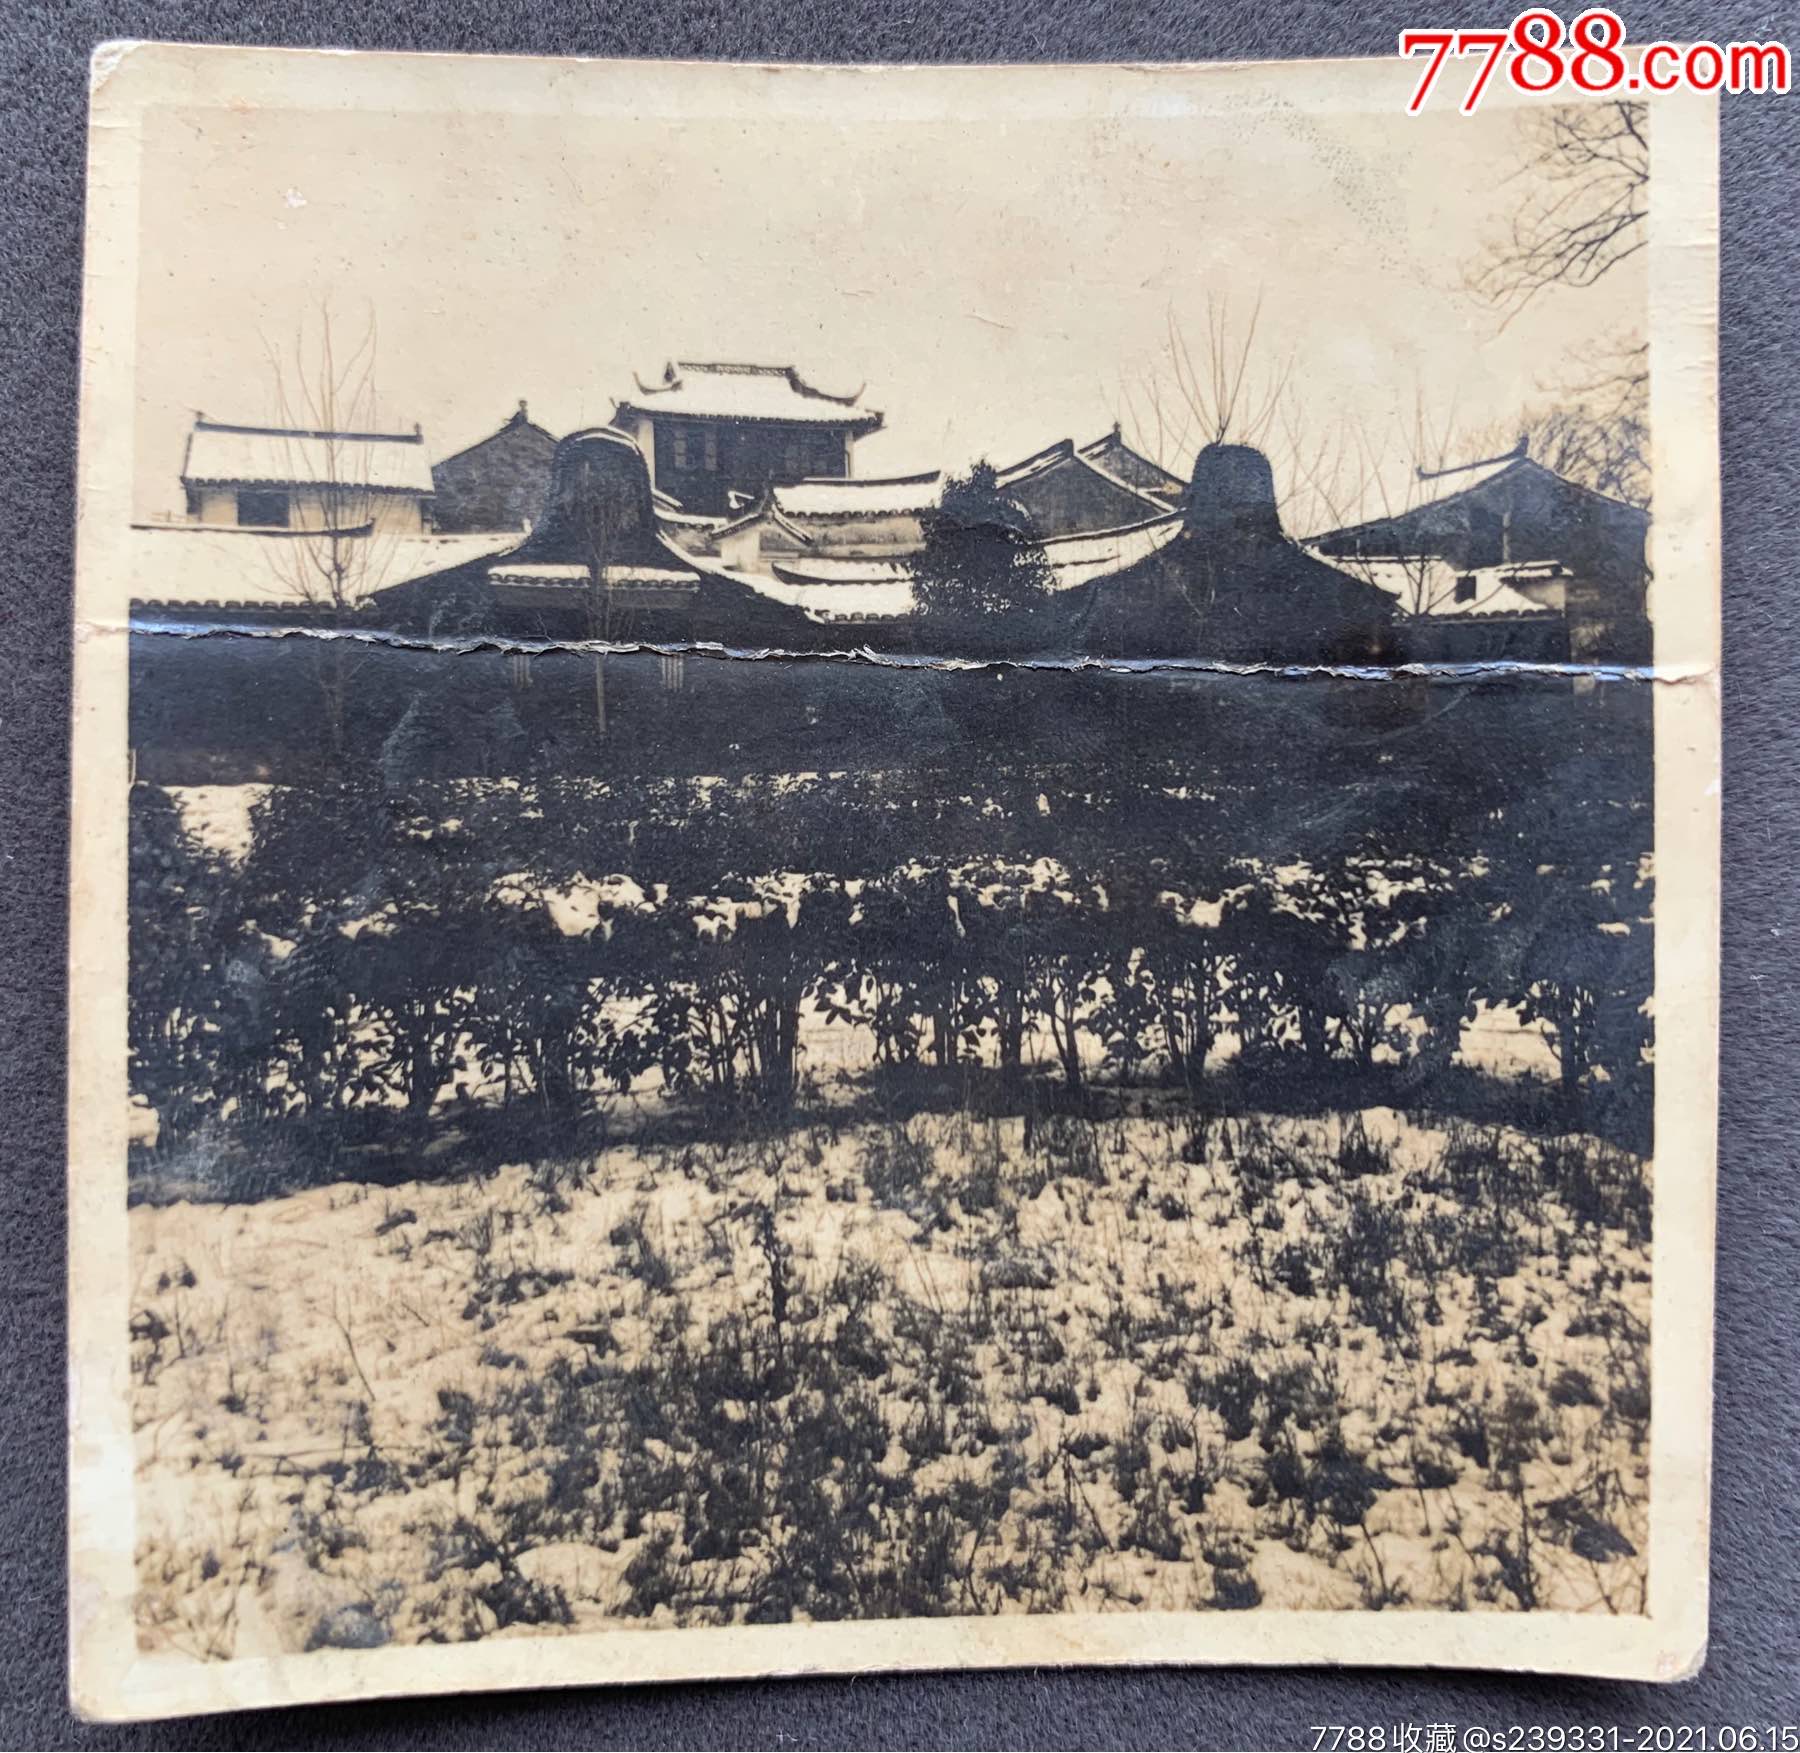 嘉定旧影民国时期上海嘉定地区古建筑群风景泛银老照片一枚